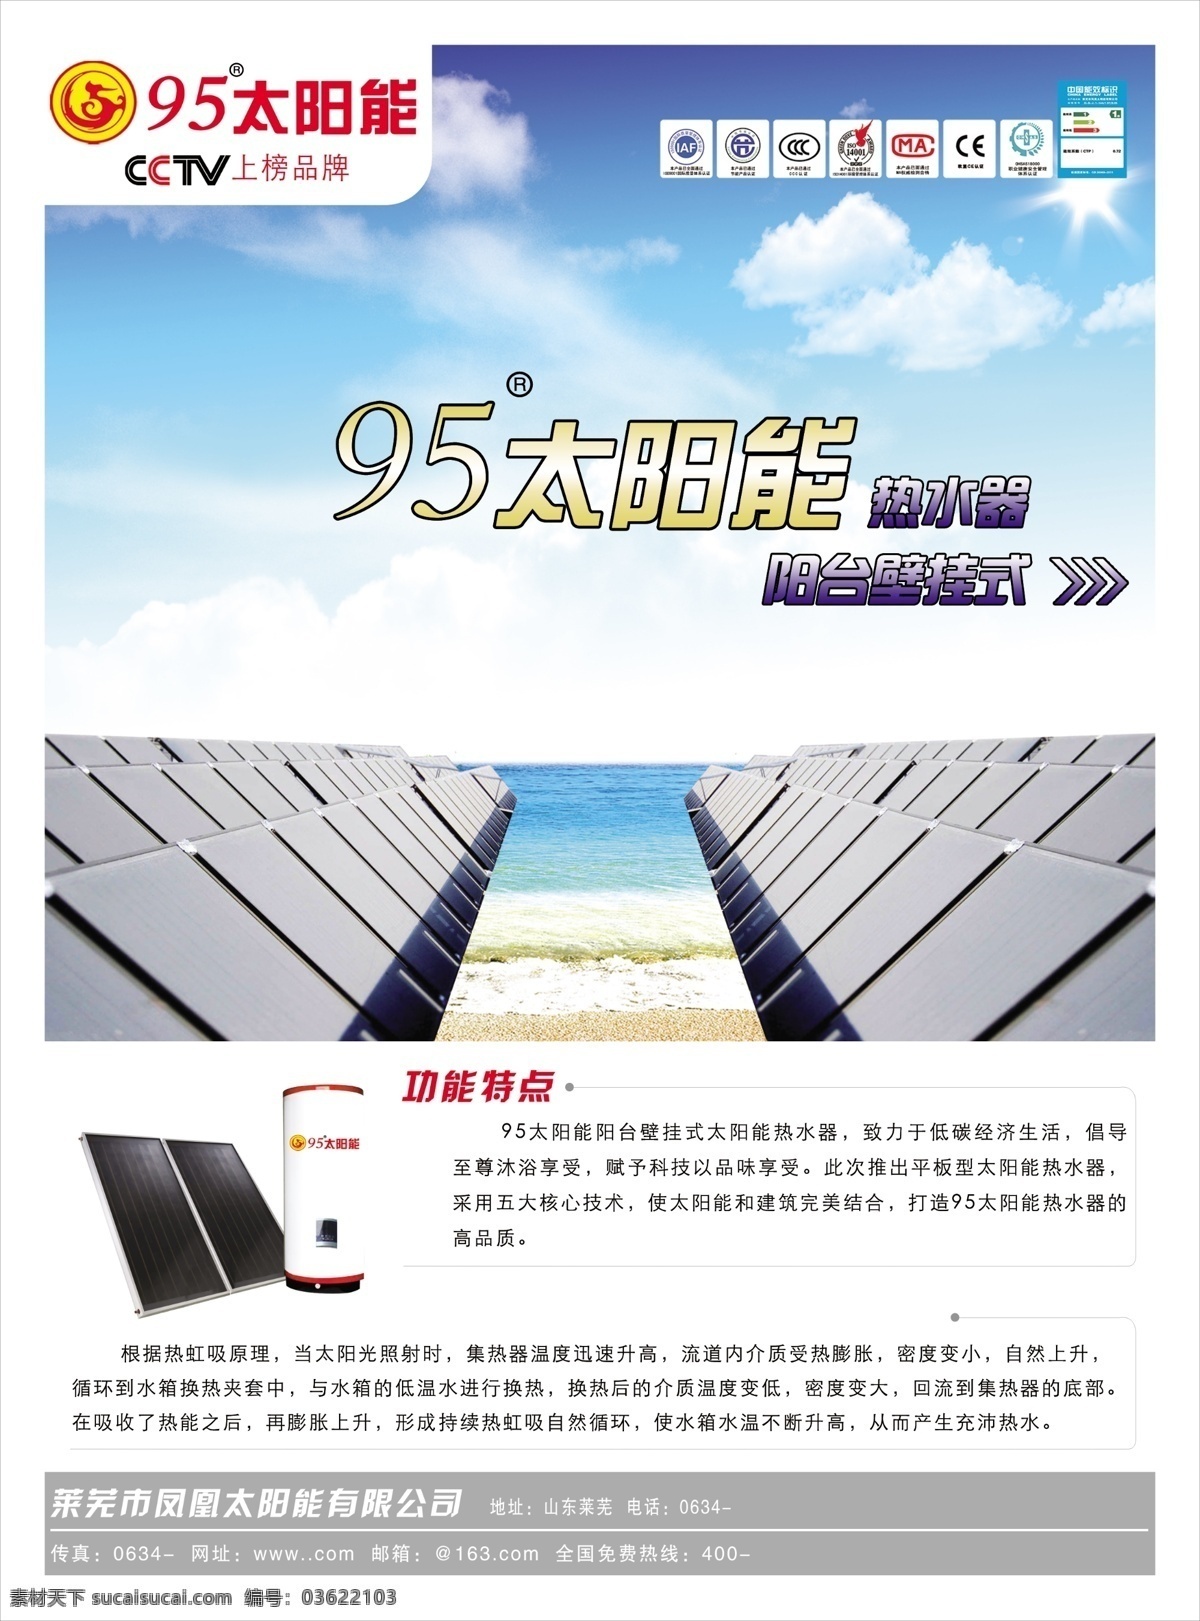 dm宣传单 公司宣传 广告设计模板 太阳能广告 太阳能宣传 太阳能宣传单 源文件 太阳能 宣传 模板下载 平板太阳能 活动 tiff 矢量图 日常生活